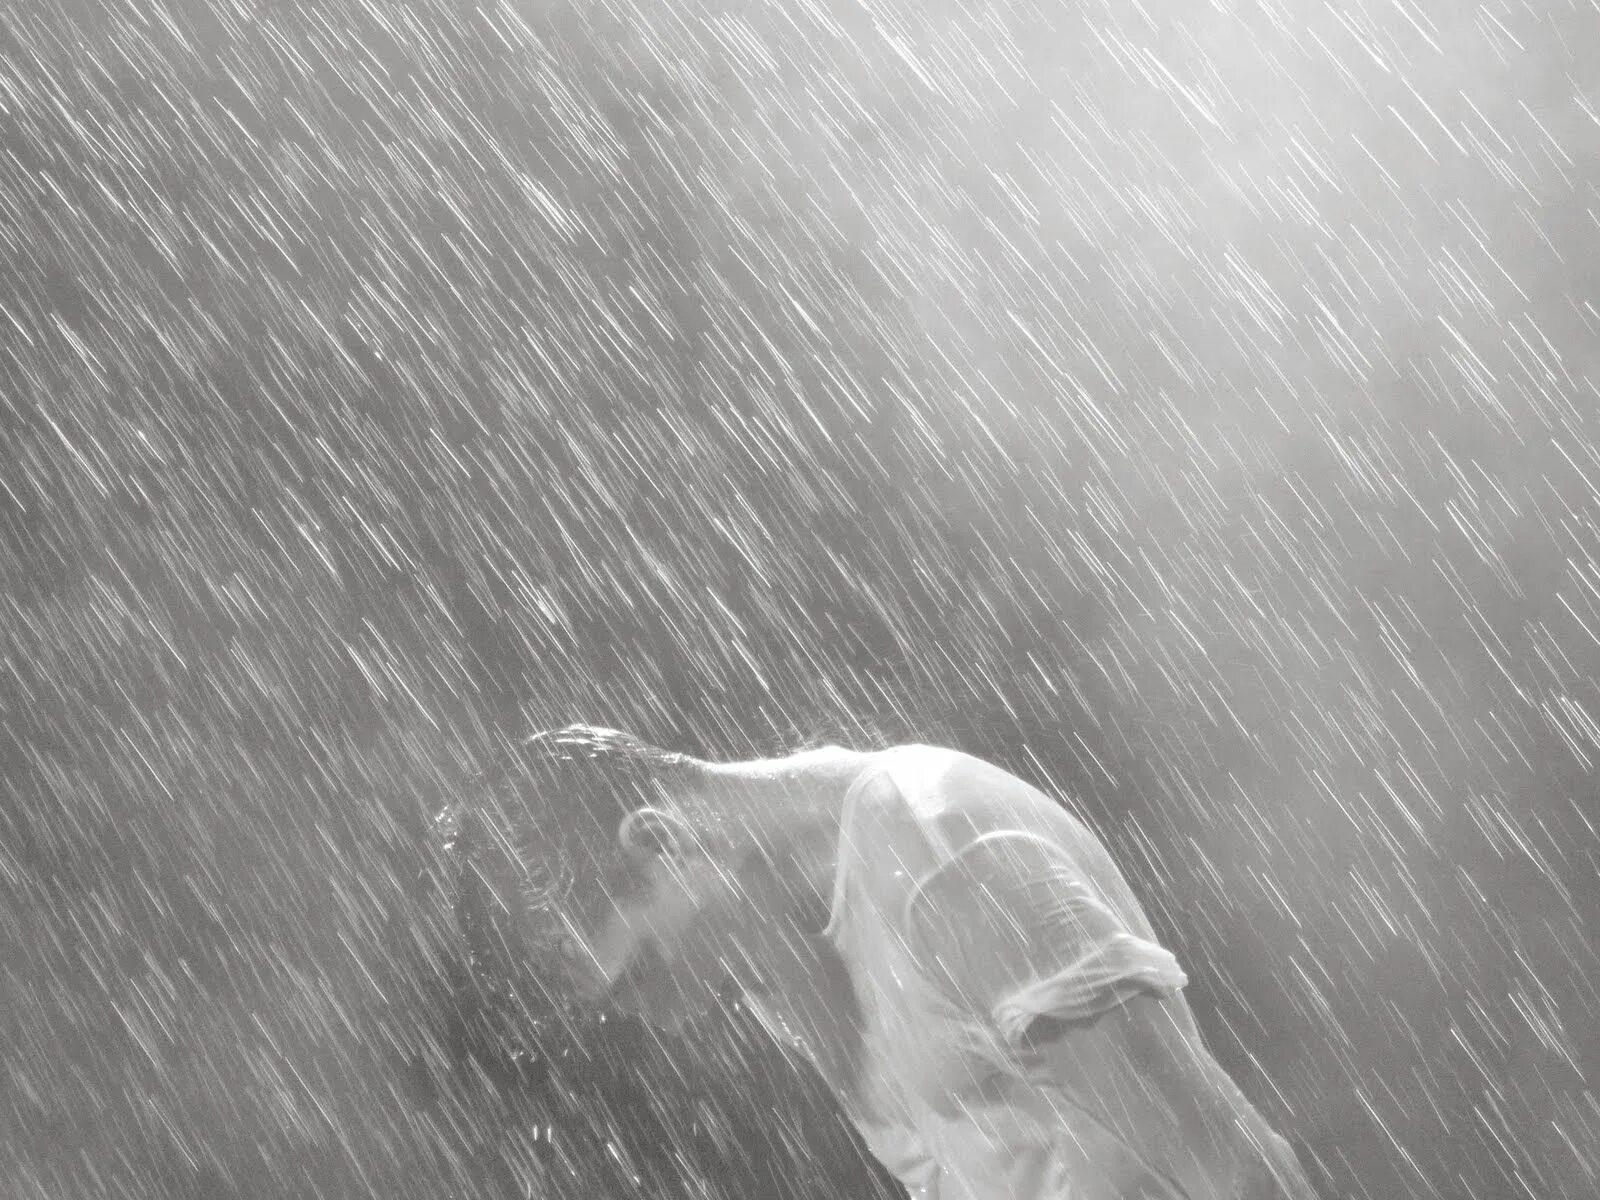 Человек под дождем. Дождь. Мужчина под дождем. Крик под дождем. Дождь без ветра